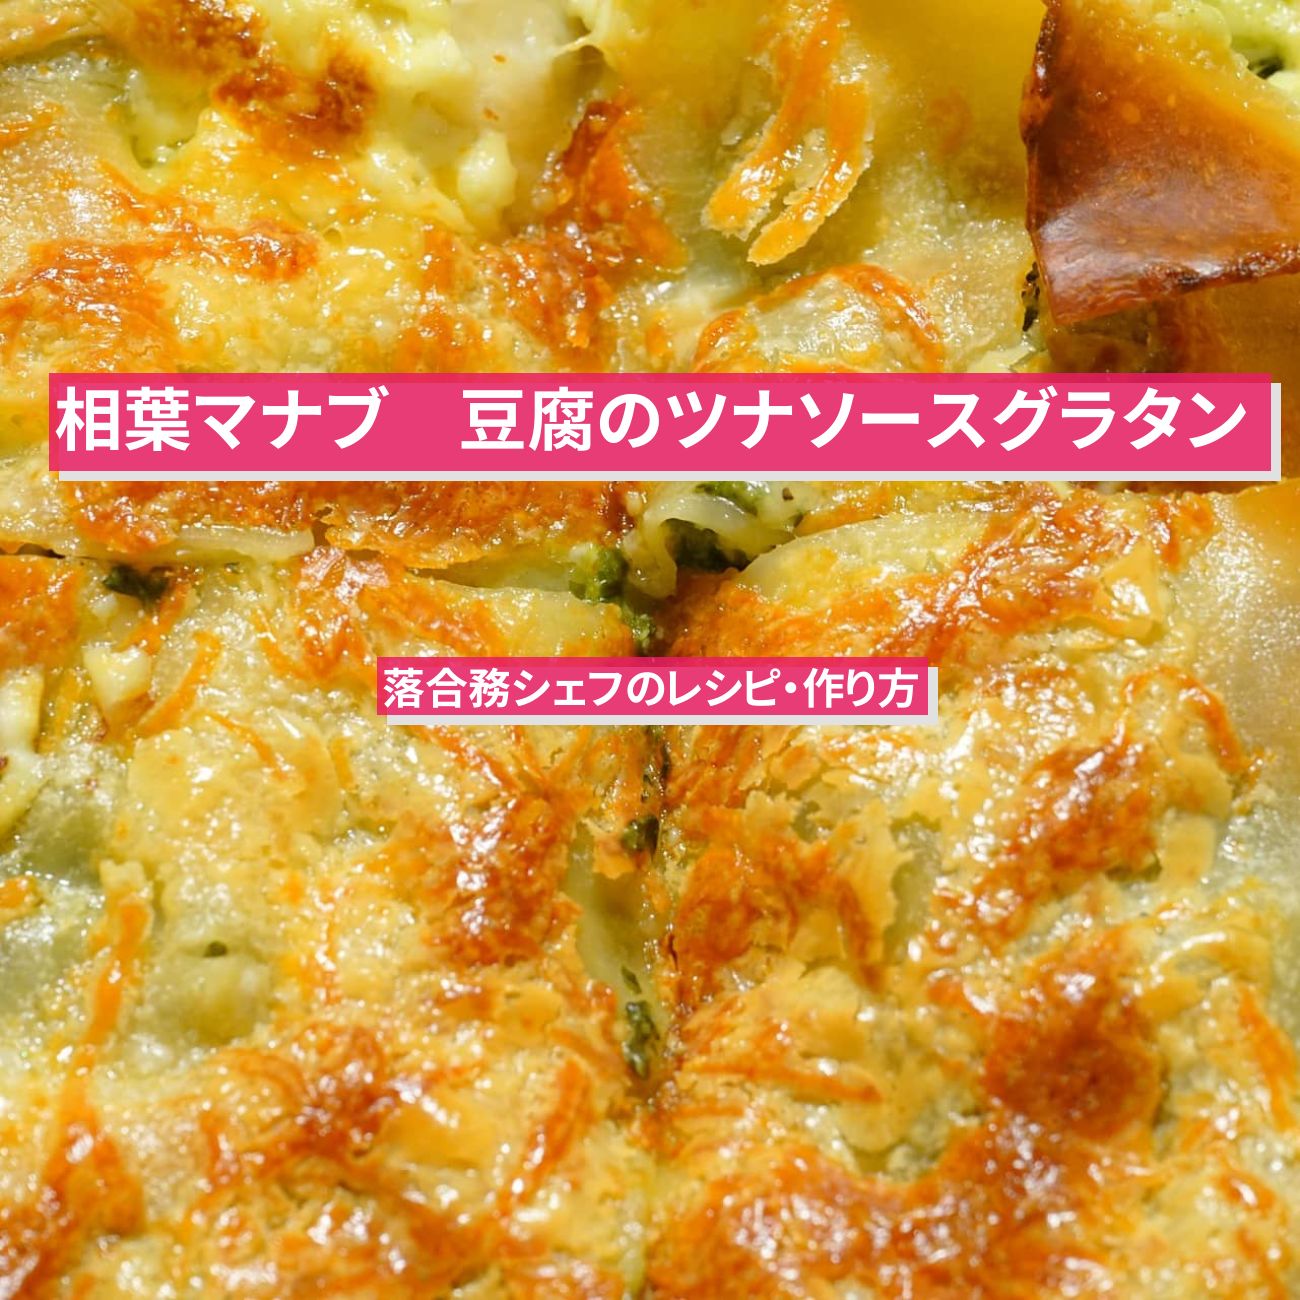 【相葉マナブ】『豆腐のツナソースグラタン』落合務シェフのレシピ・作り方